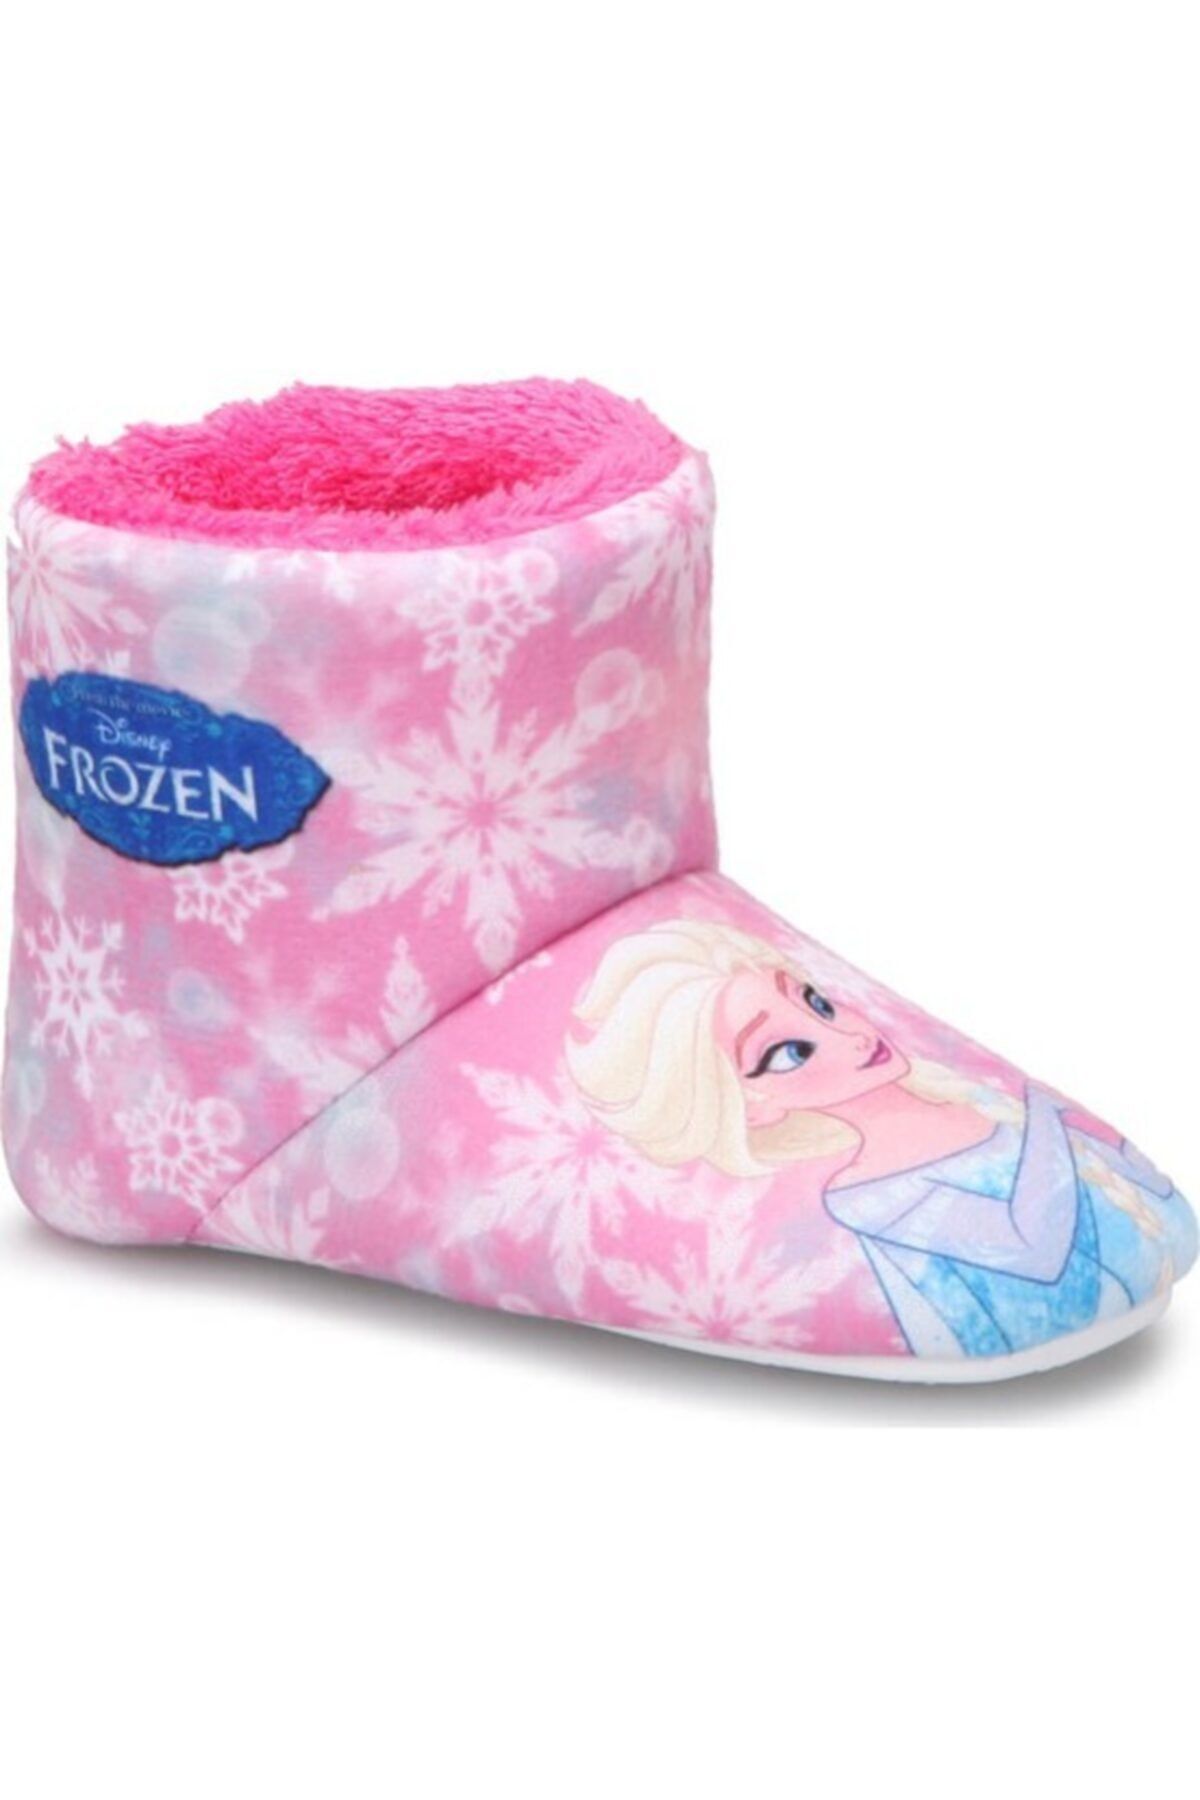 Frozen Kız Çocuk Pembe Elsa Anna Terlik Panduf Kreş Ev Ayakkabısı